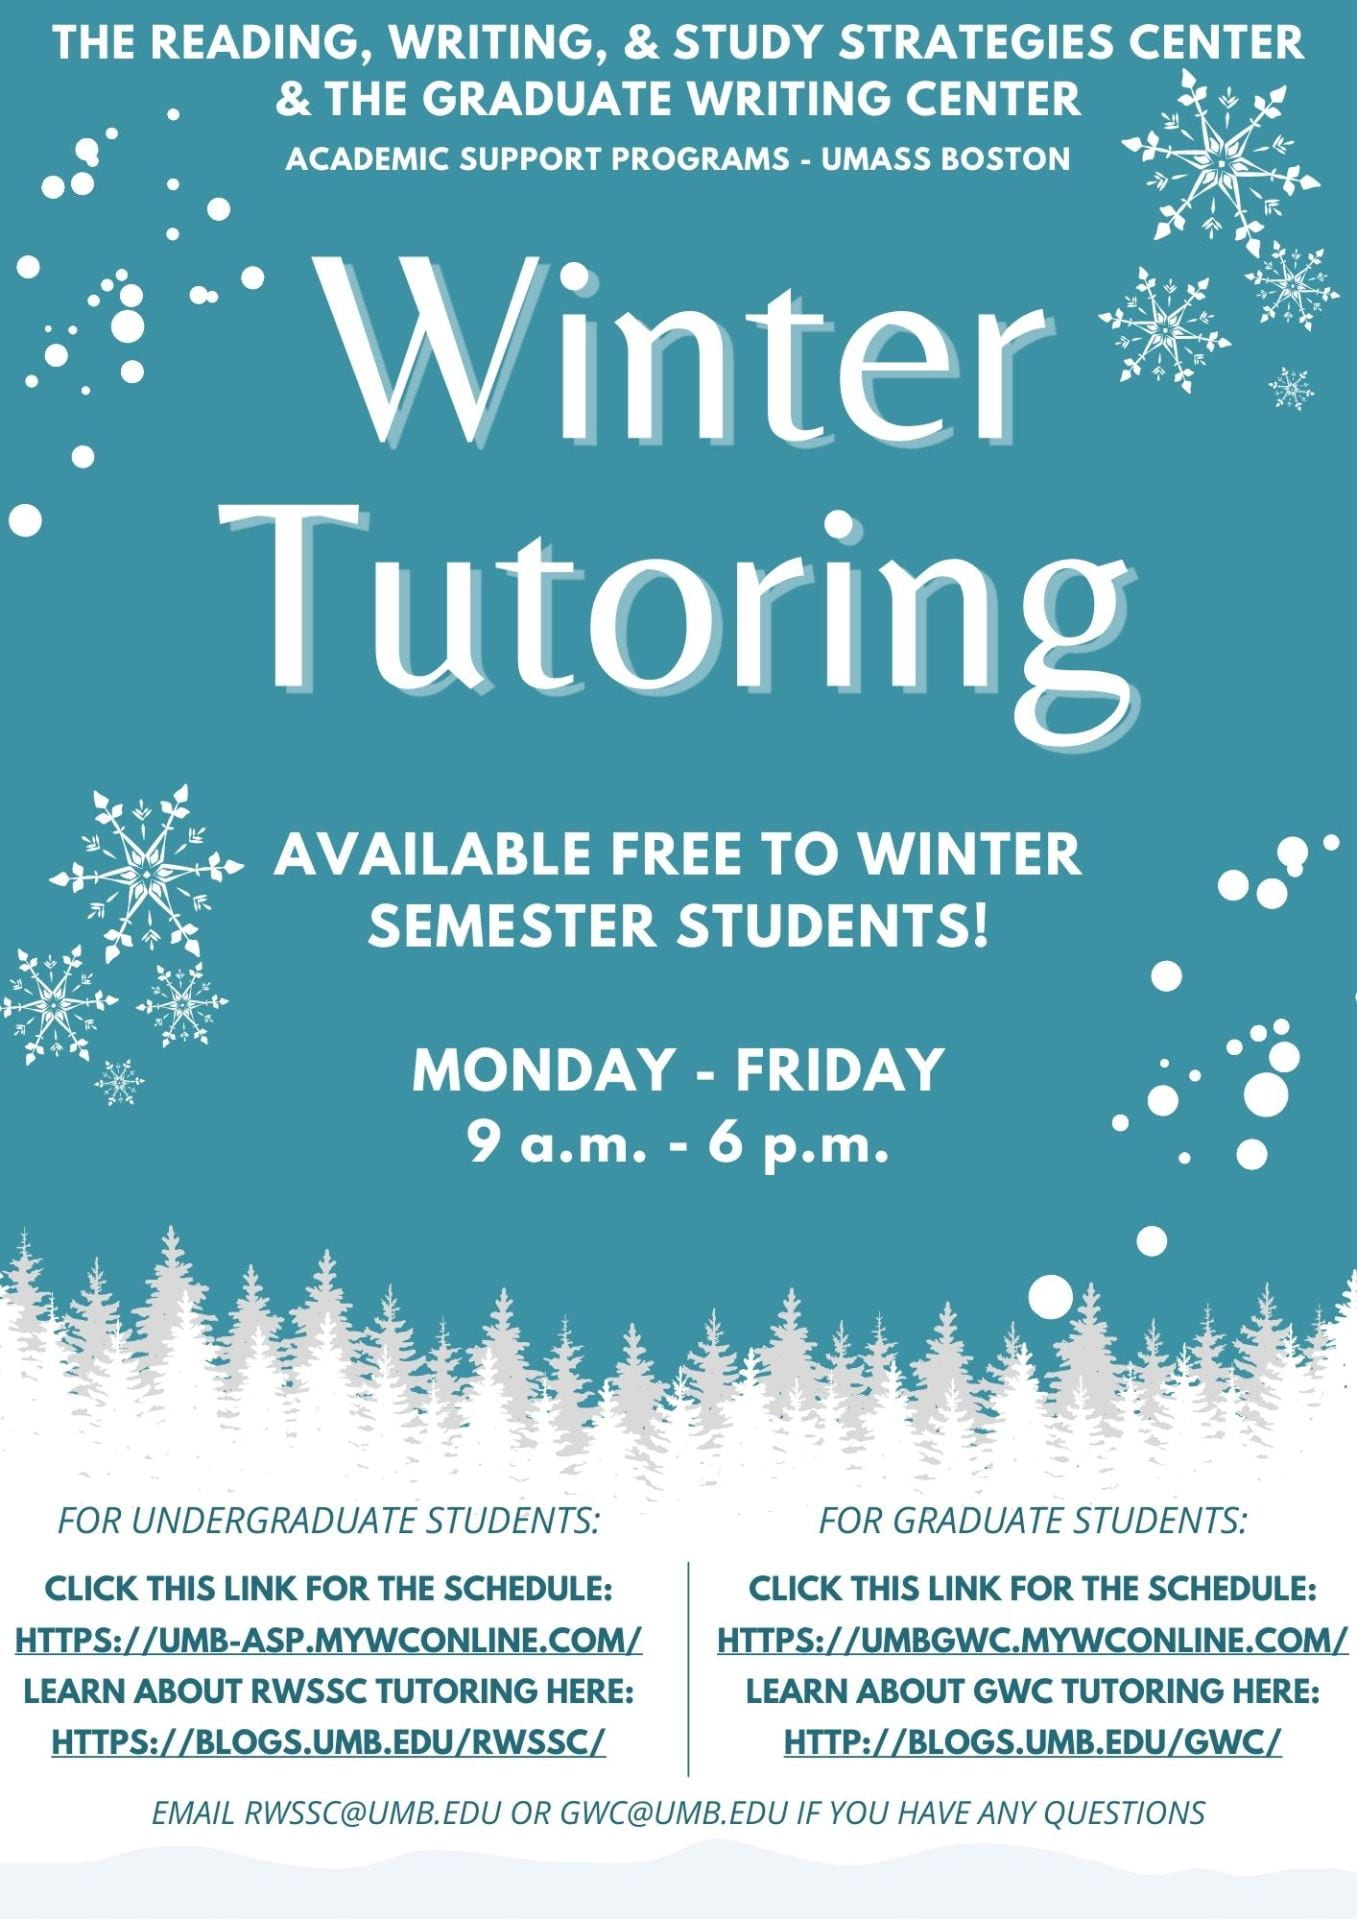 Winter tutoring flyer